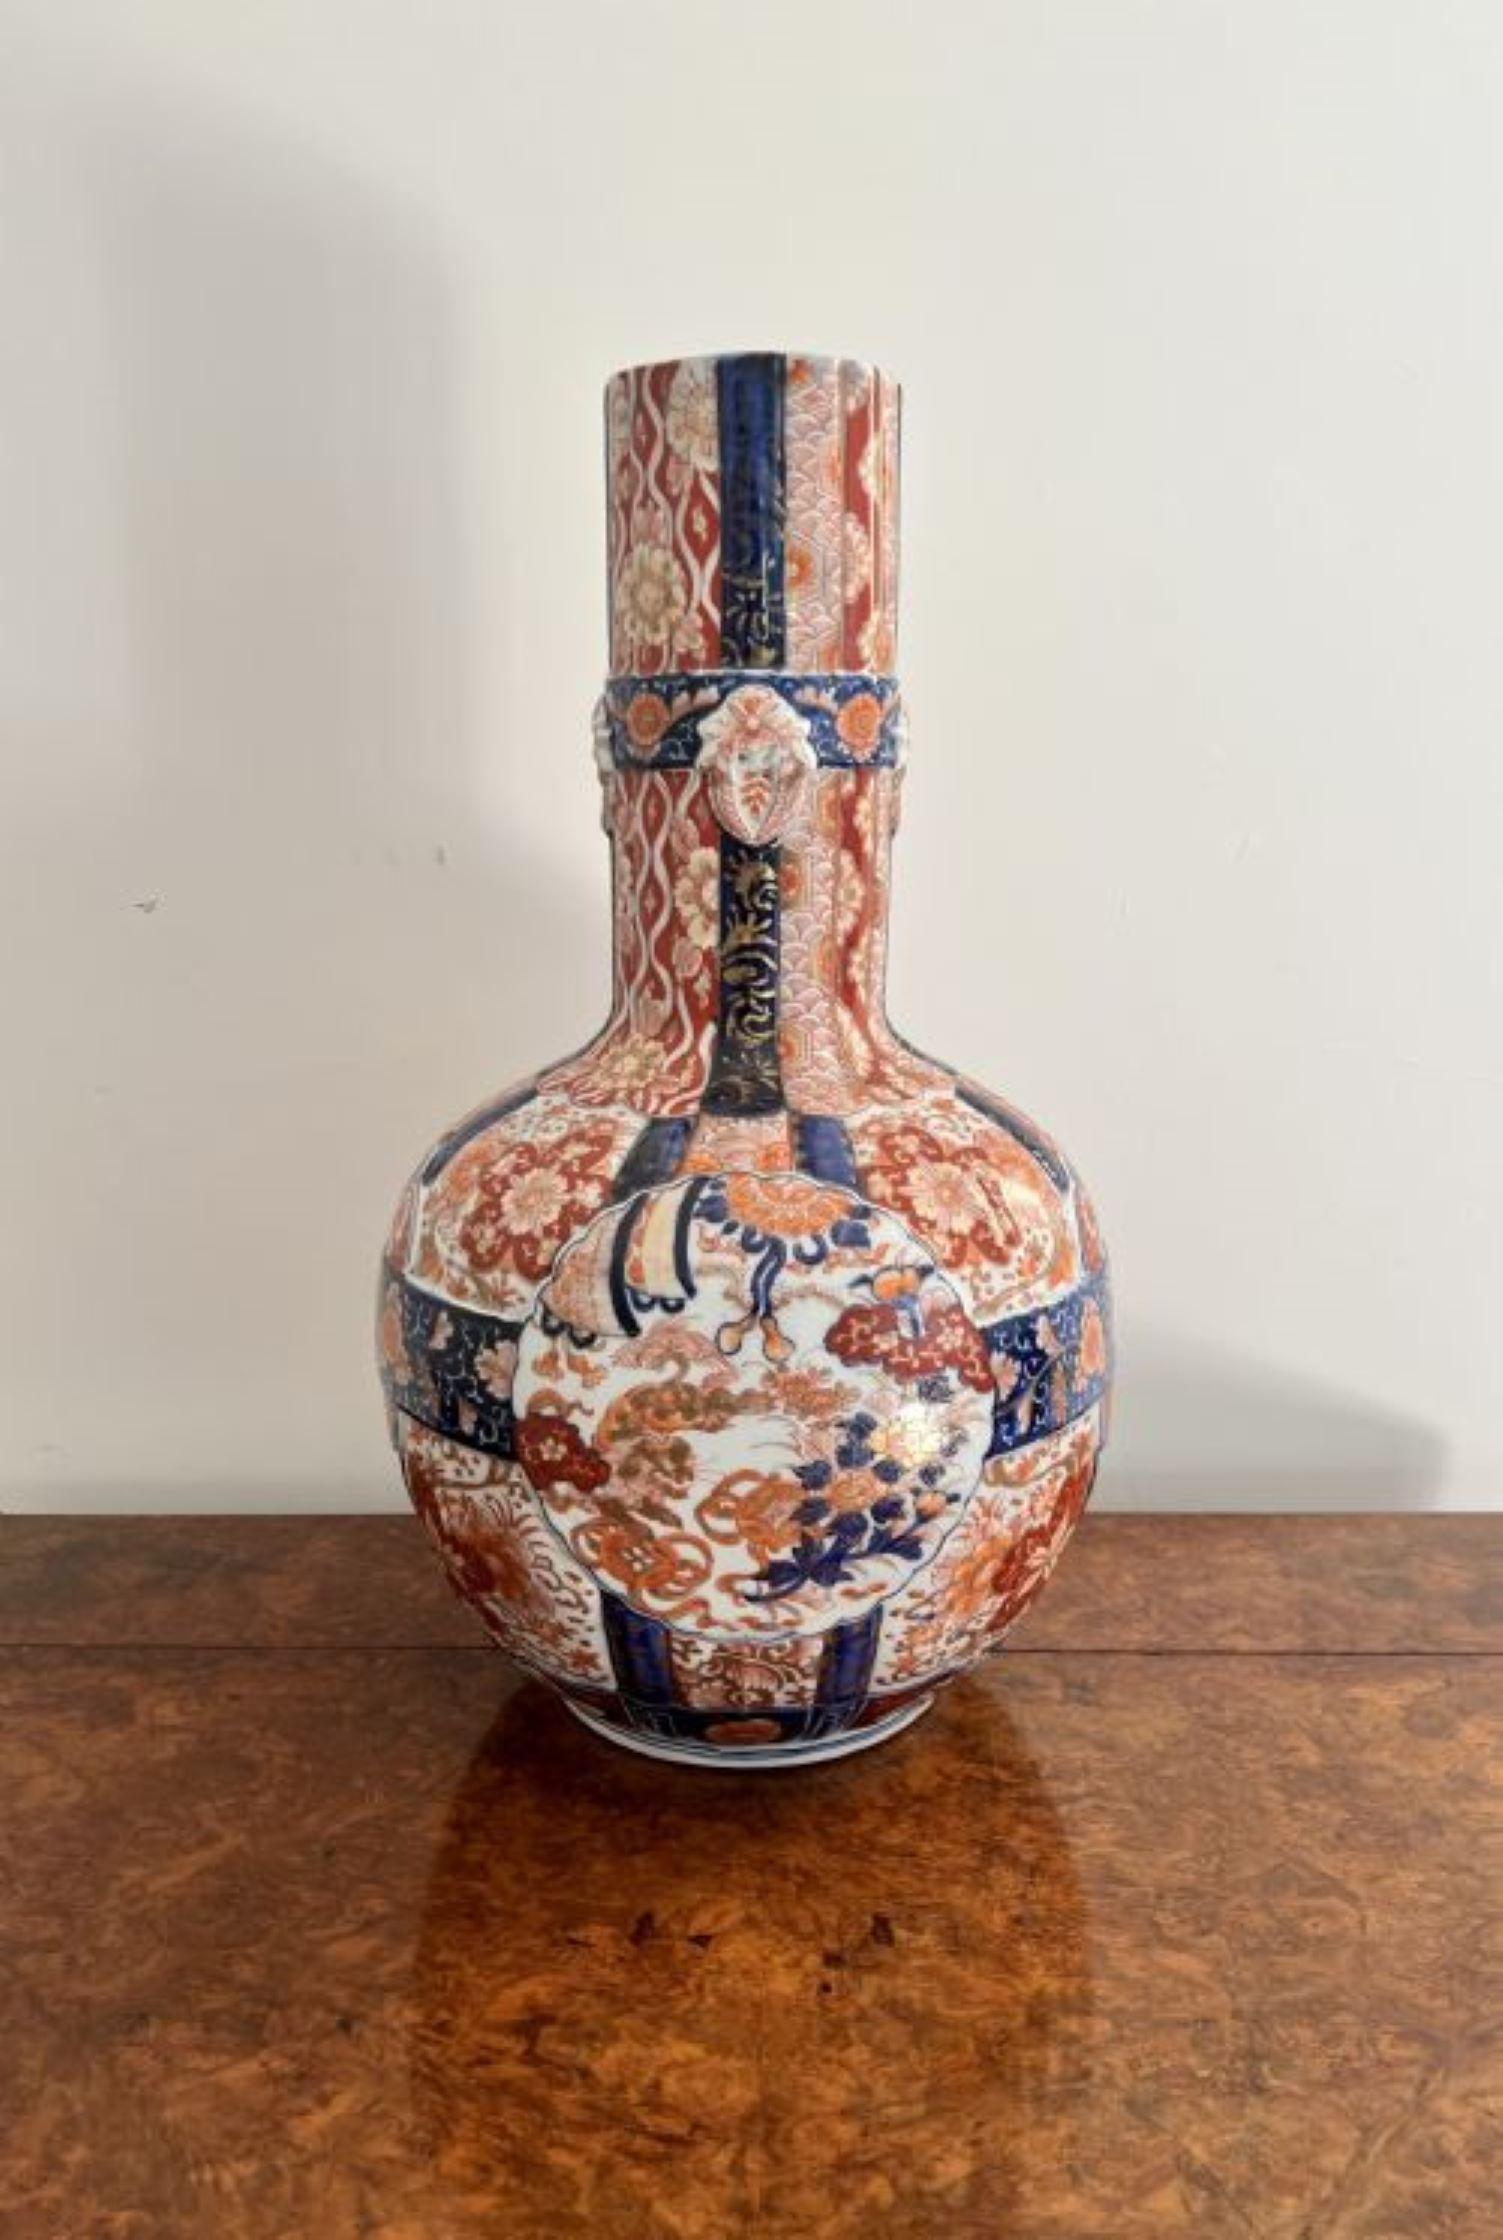 Superbe vase japonais Imari du XIXe siècle, de qualité exceptionnelle, présentant une décoration fantastique sur l'ensemble des panneaux composés de fleurs, d'arbres, de dragons et de rouleaux peints à la main dans de superbes couleurs rouge, bleu,